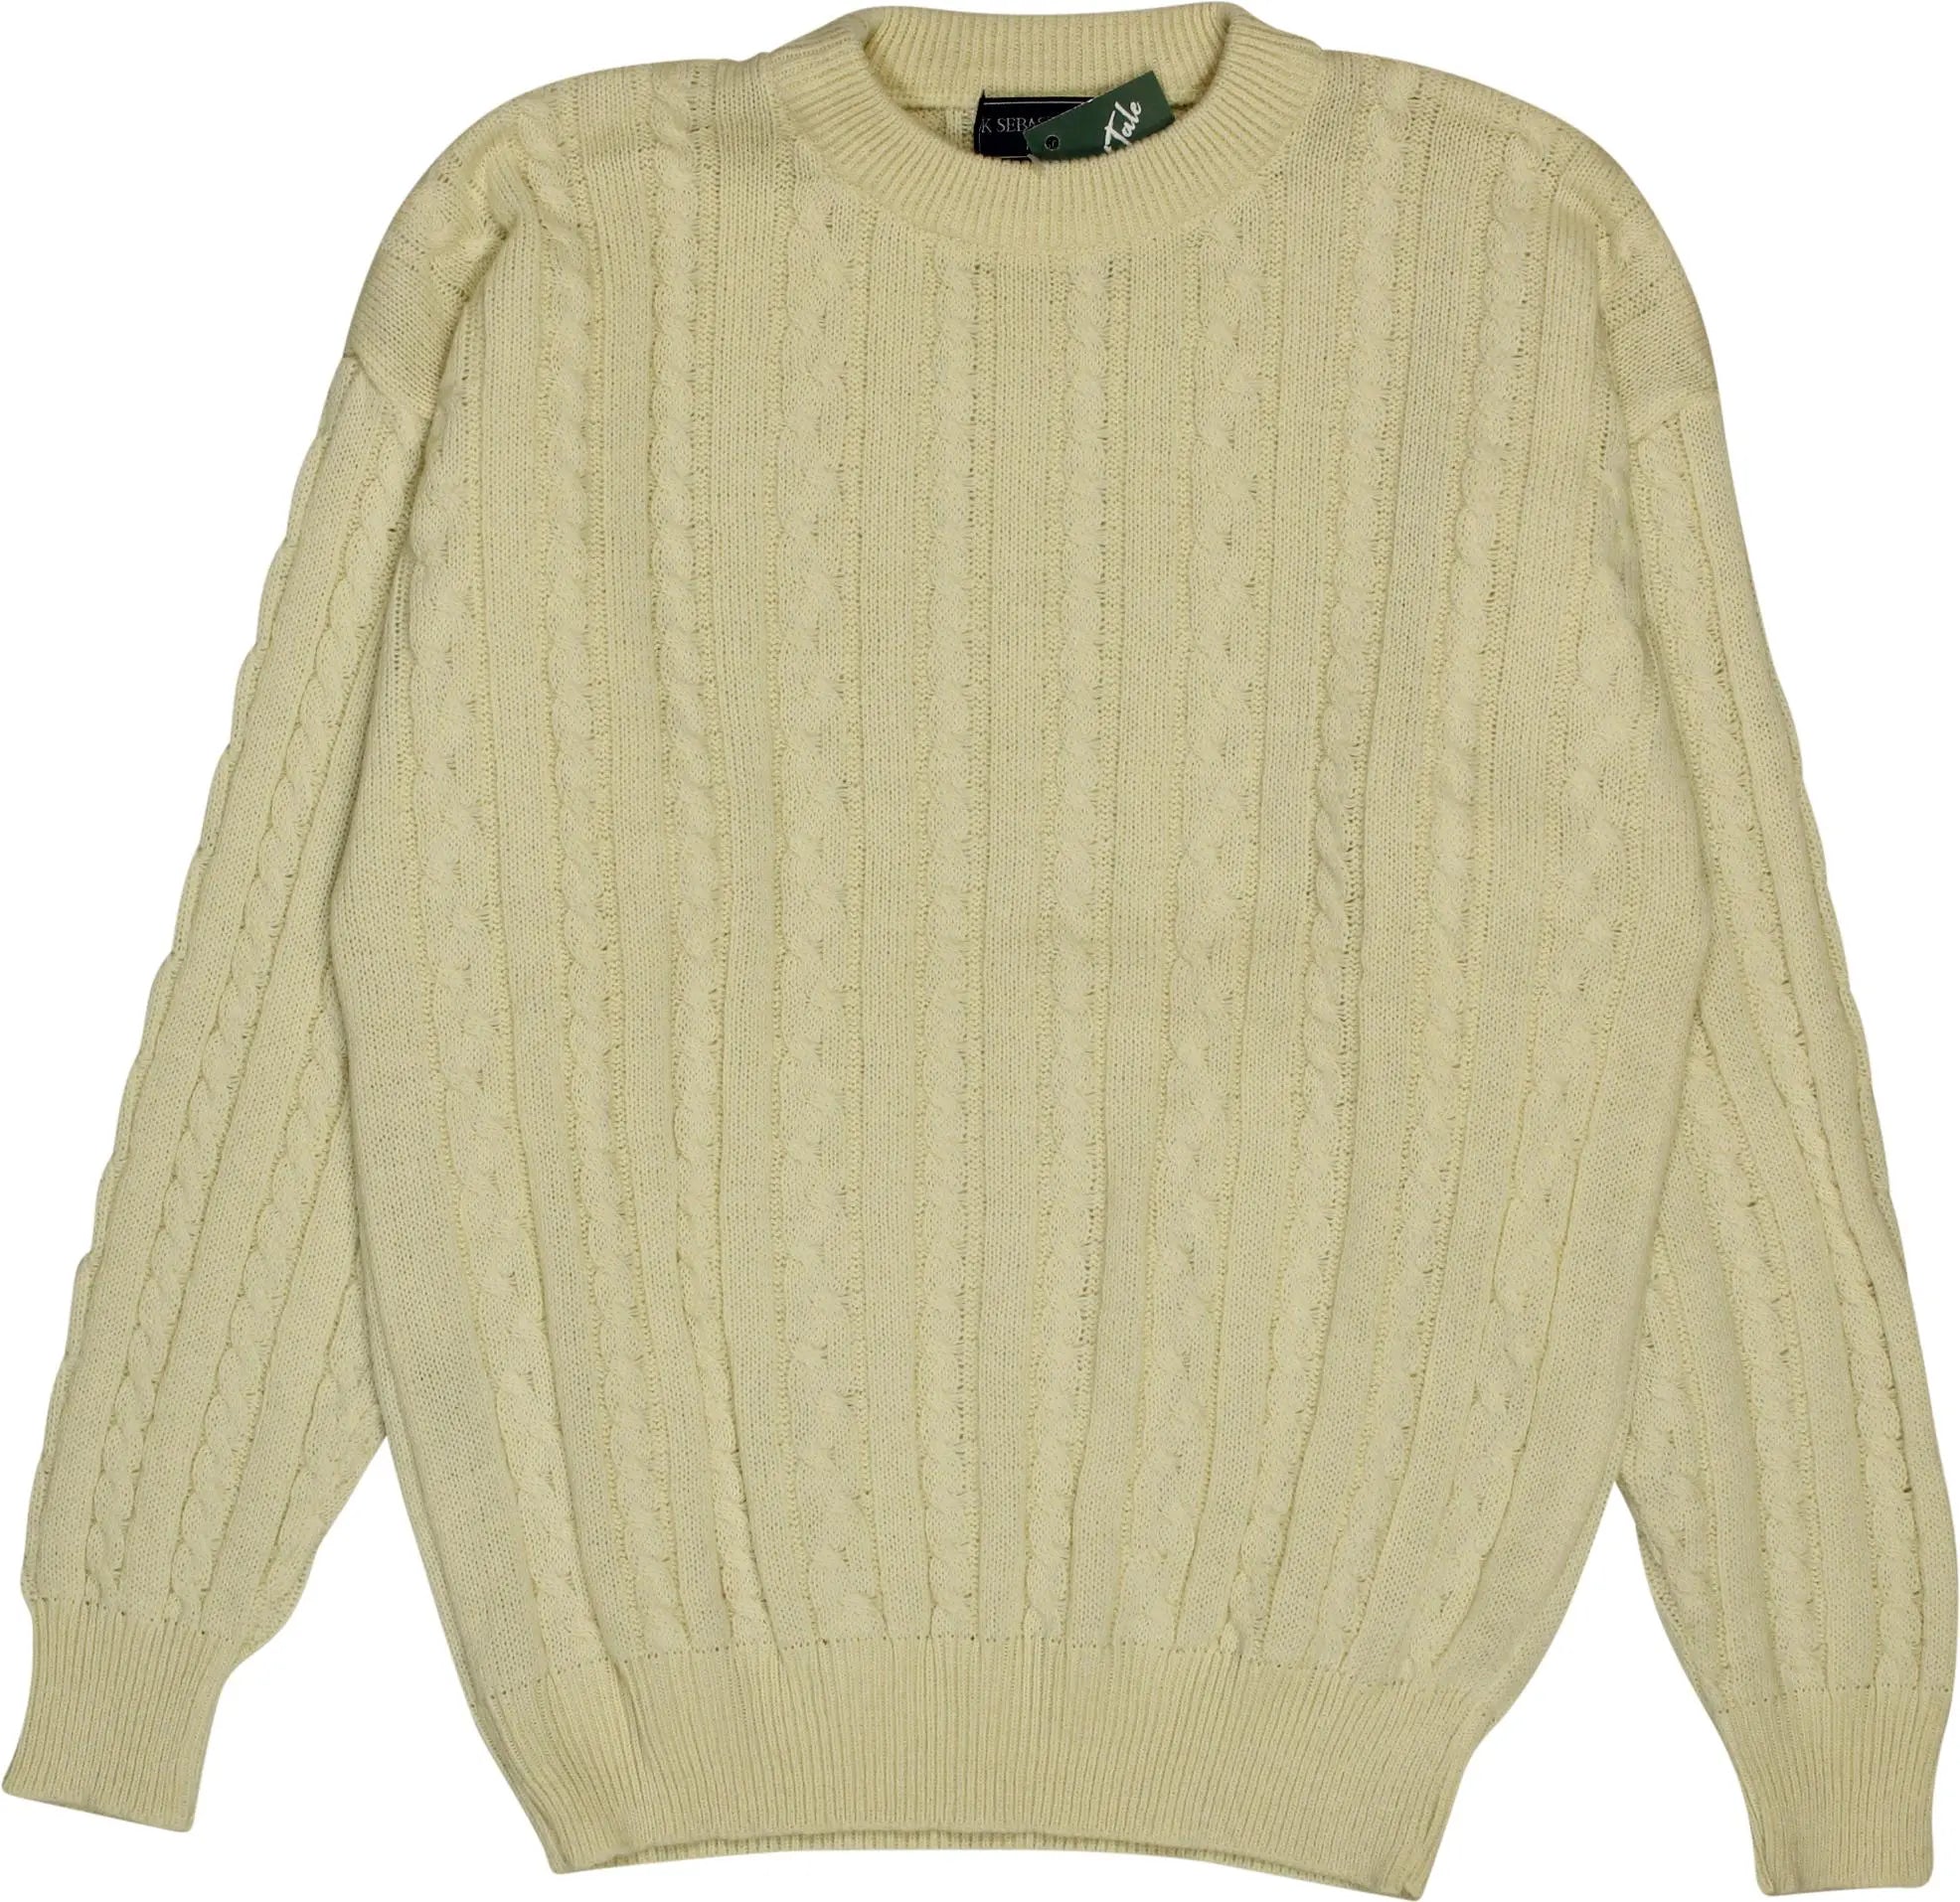 K Sabasian K - Cream Wool Blend Jumper- ThriftTale.com - Vintage and second handclothing